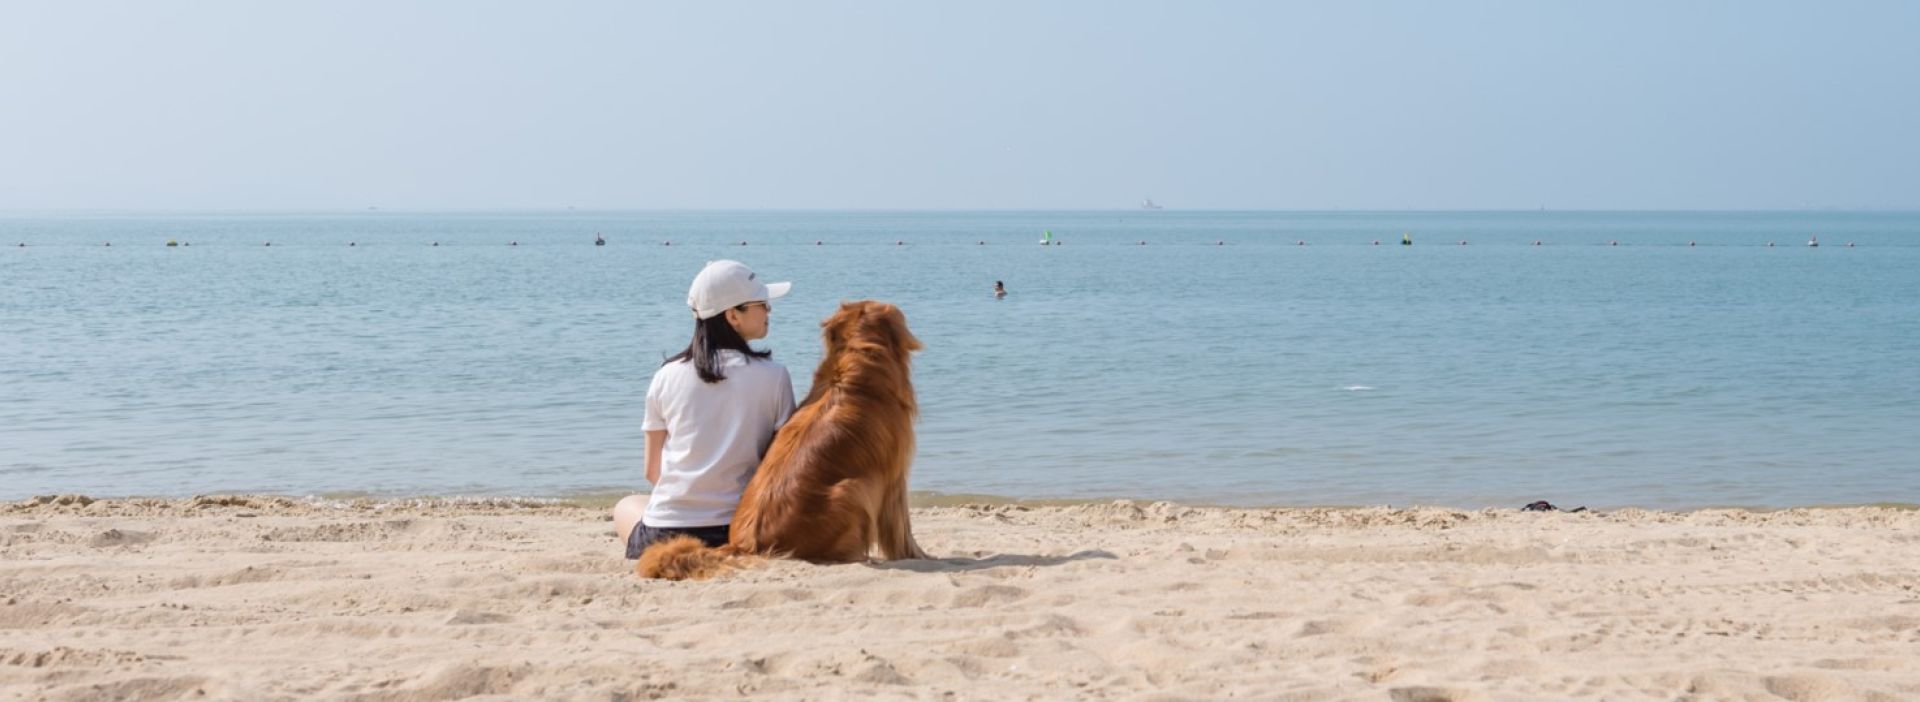 Frau und Hund sitzen am Strand und schauen aufs Meer